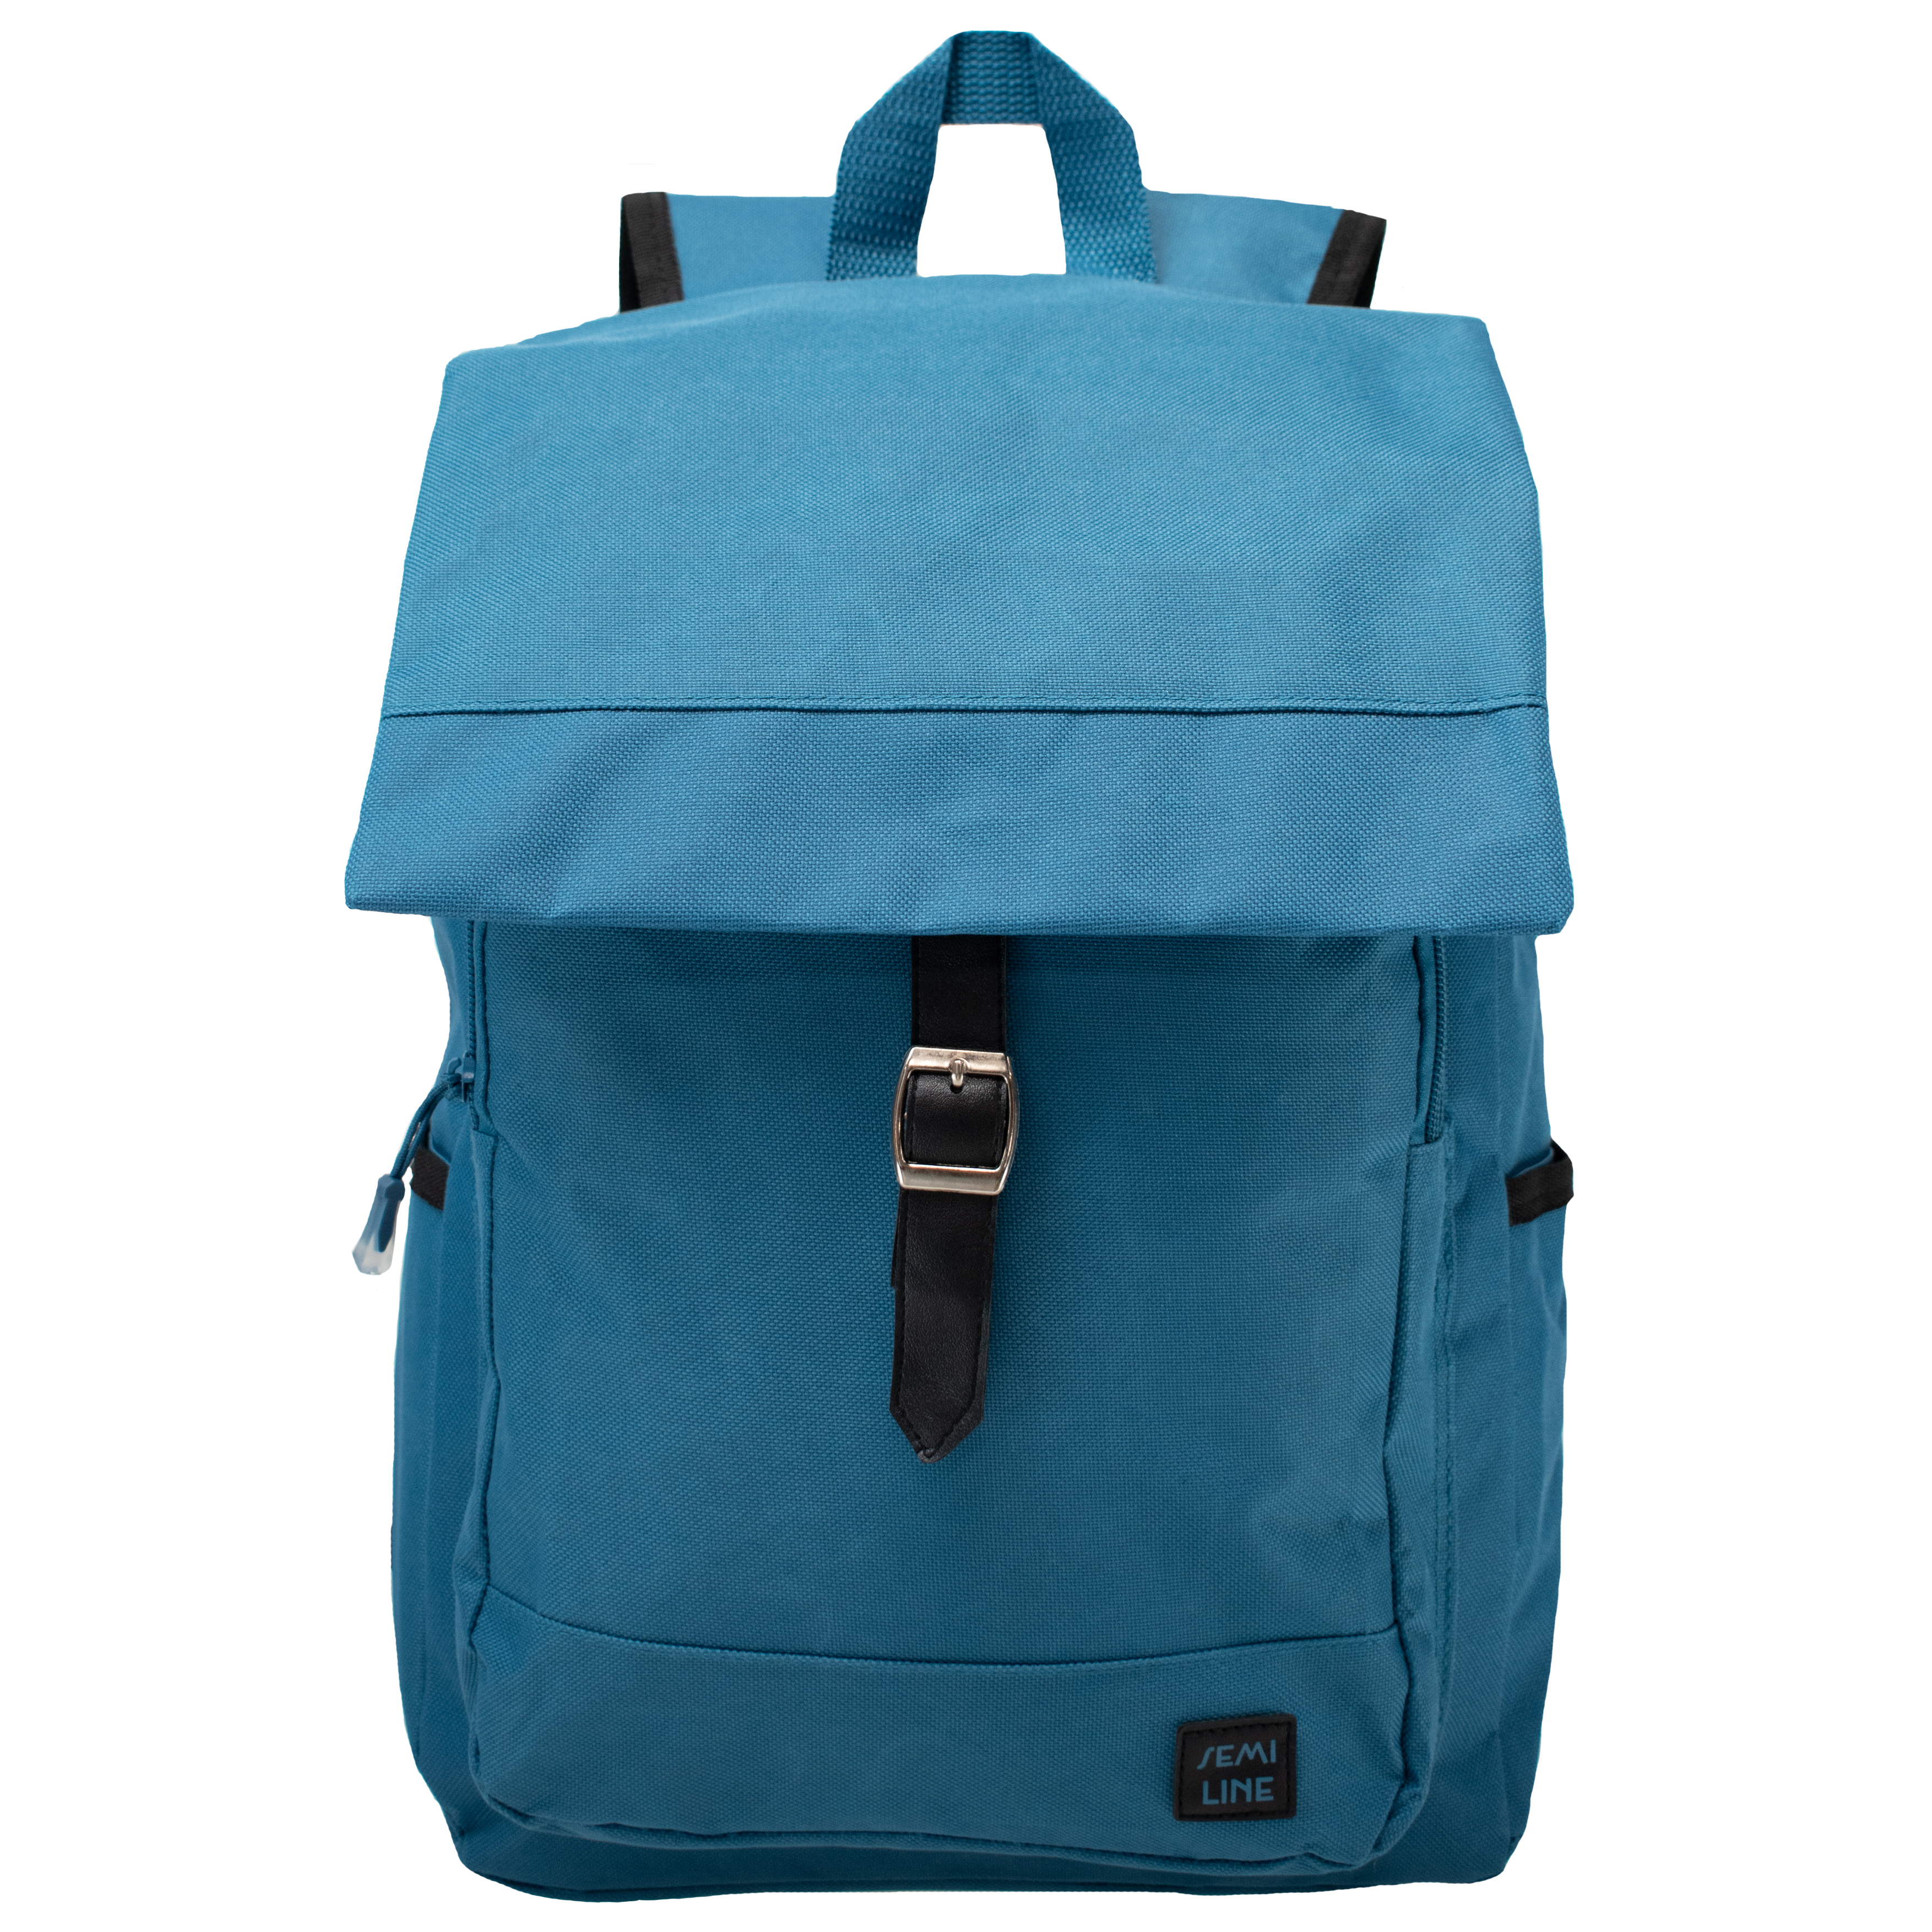 Backpack Semiline